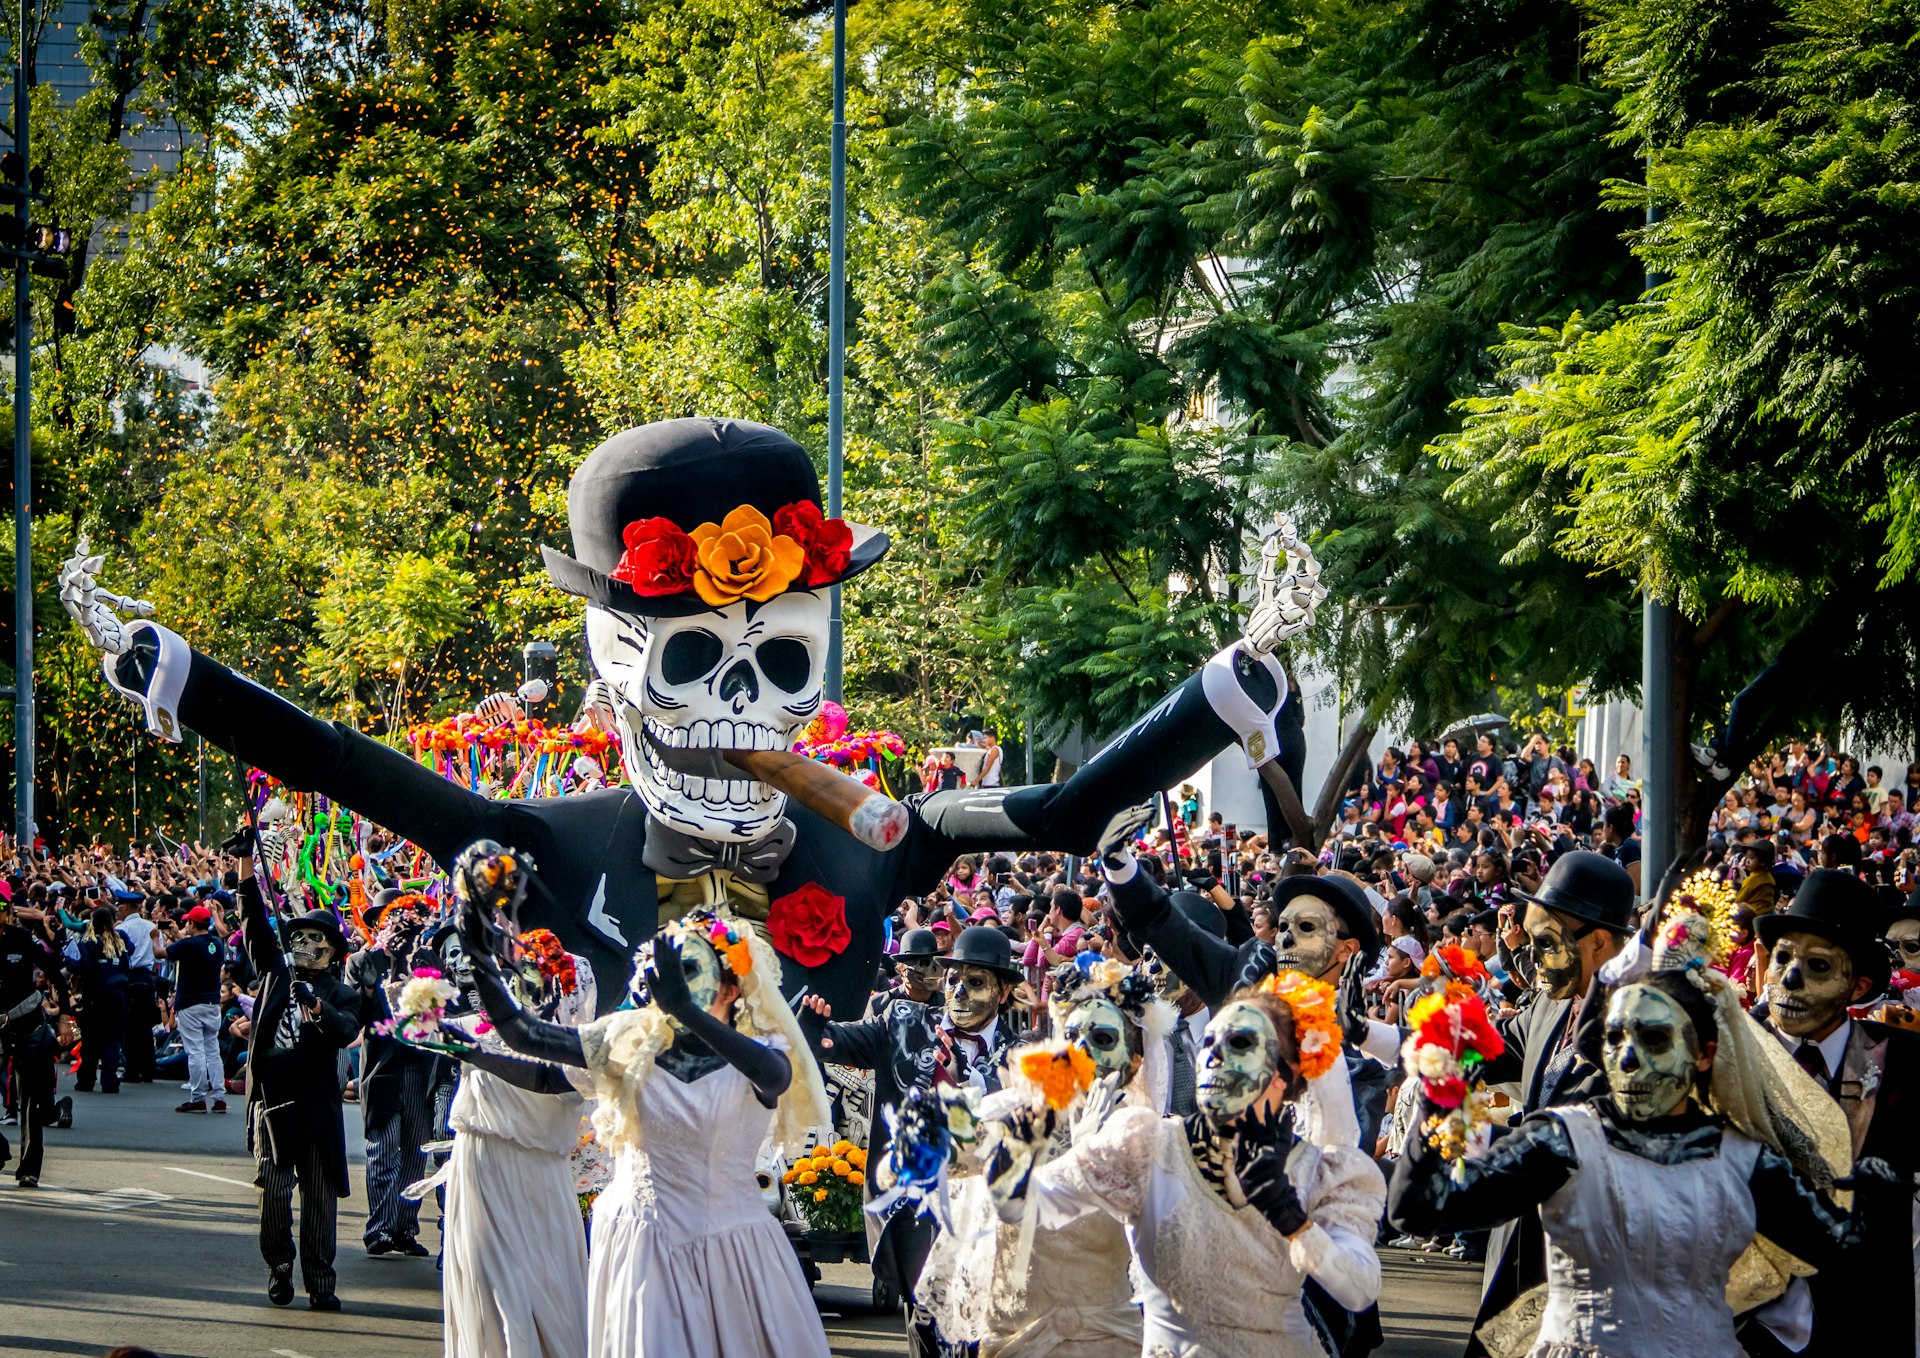 People dressed as la catrina calavera, marching in a Dia de Muertos parade